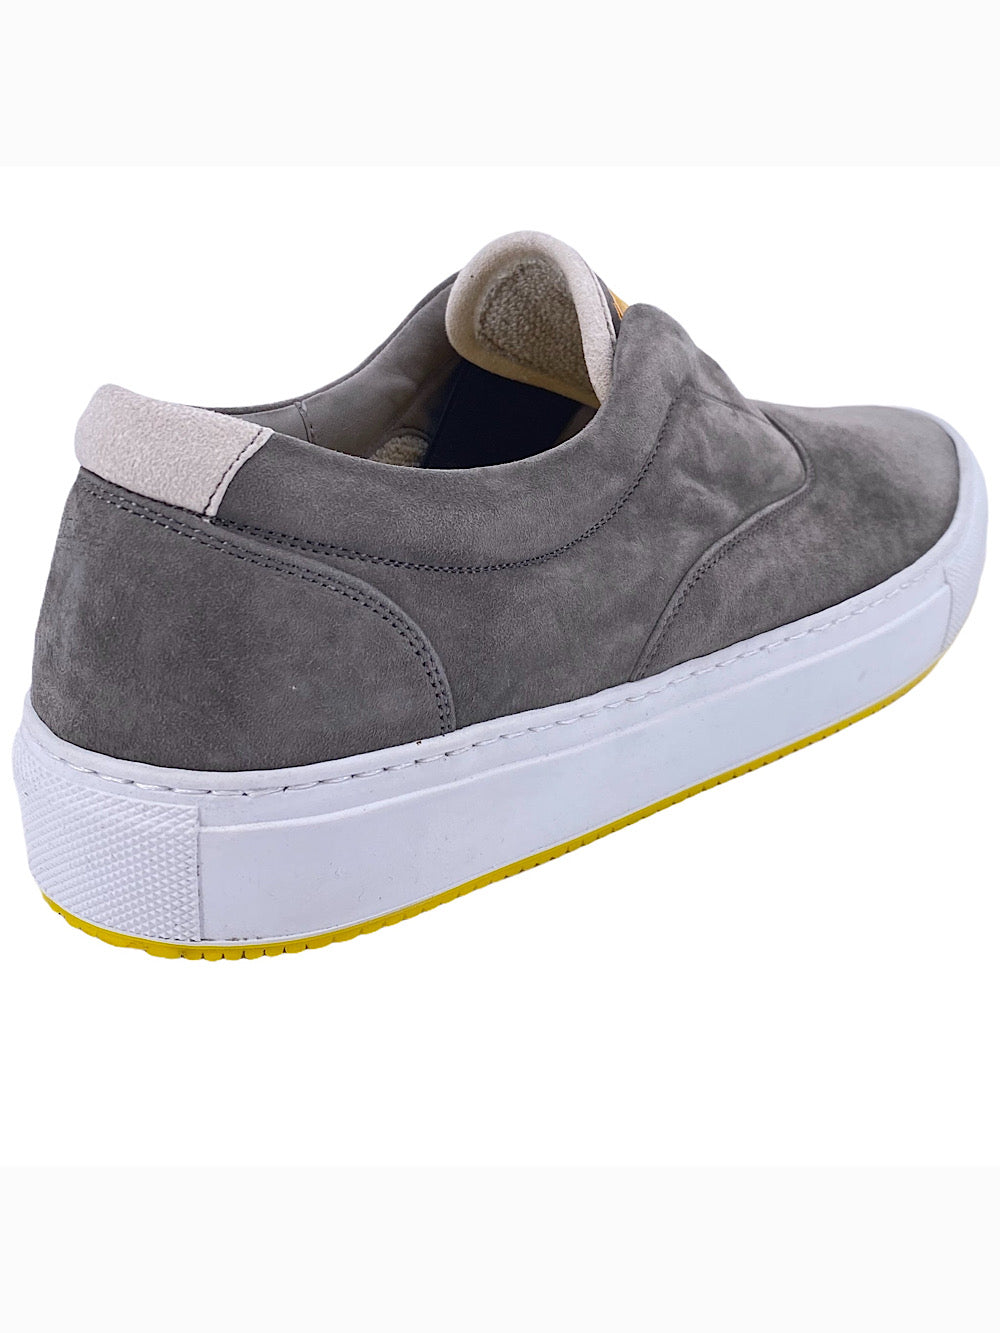 Svevo slip on sneaker in gray suede